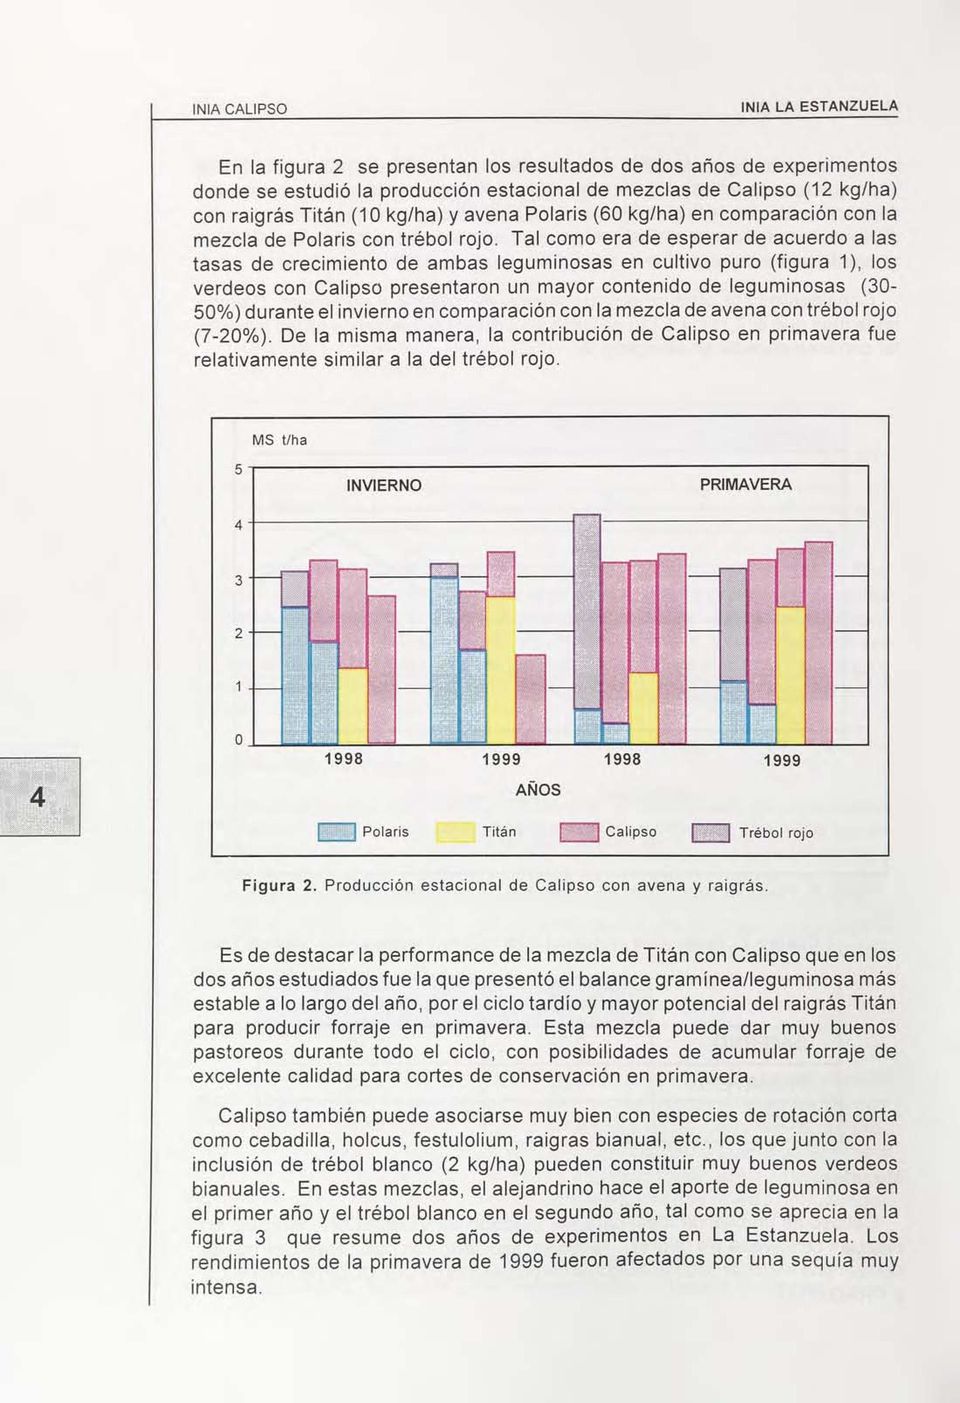 Tal como era de esperar de acuerdo a las tasas de crecimiento de ambas leguminosas en cultivo puro (figura 1), los verdeos con Calipso presentaron un mayor contenido de leguminosas (30-50%) durante